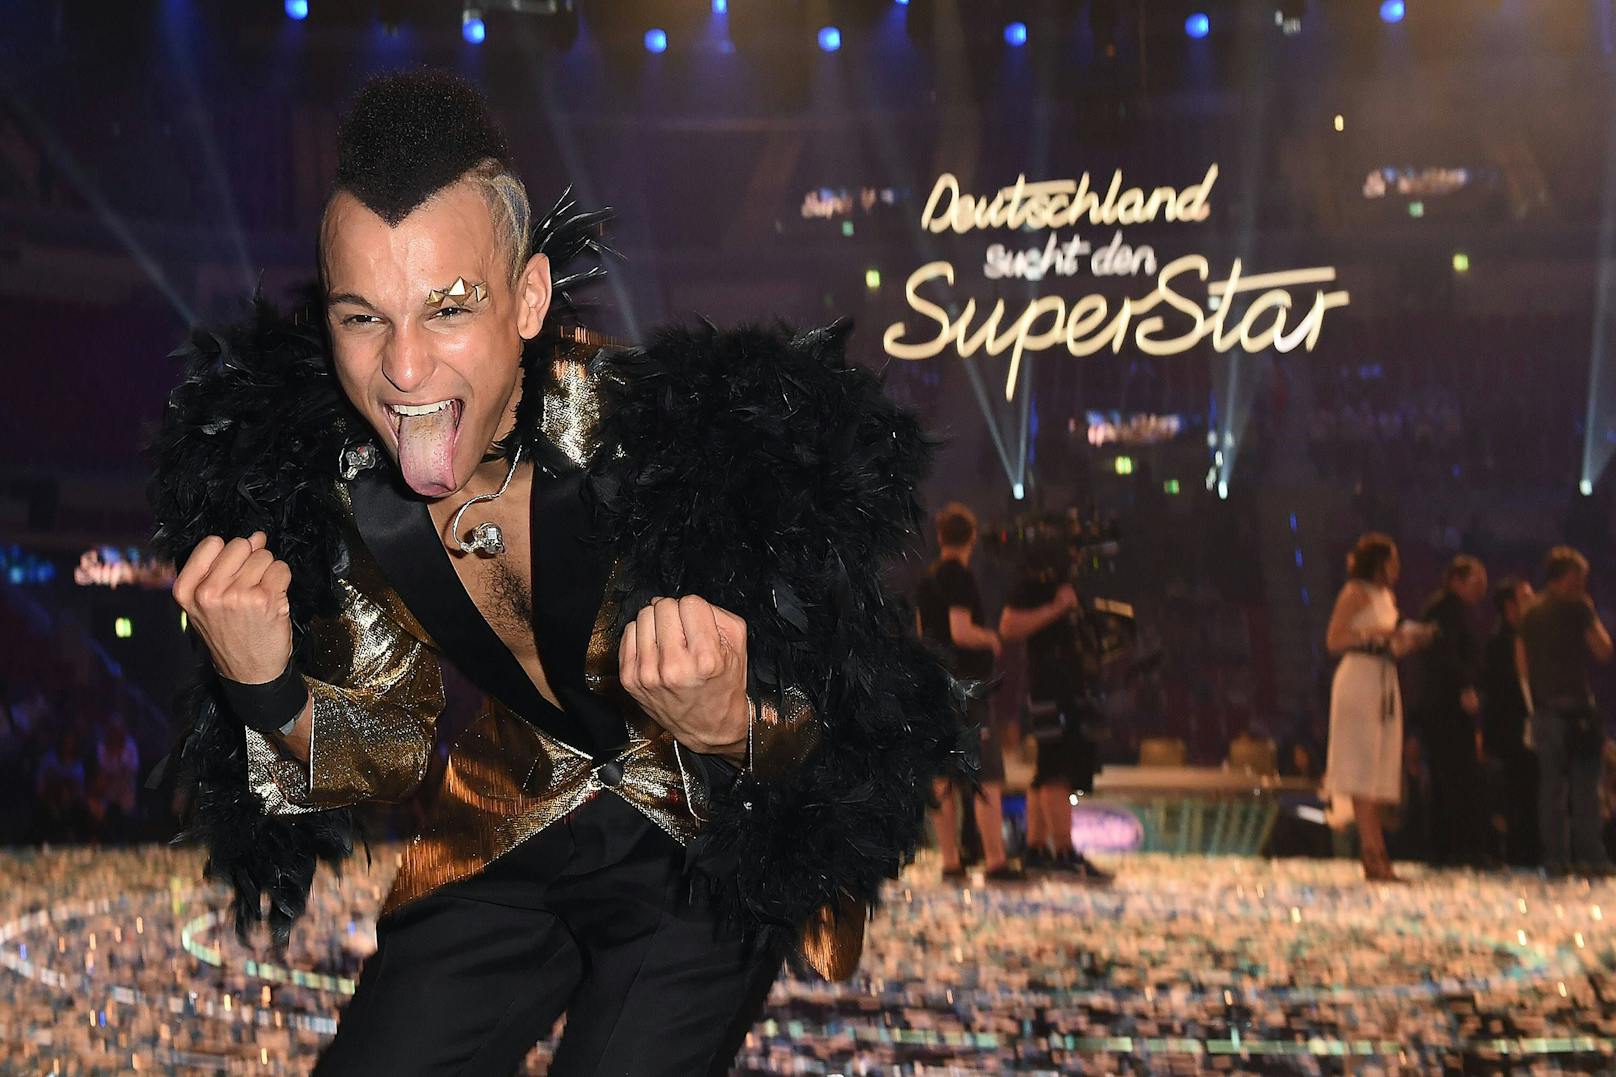 Der Sänger konnte sich den Titel "Deutschlands Superstar" sichern.